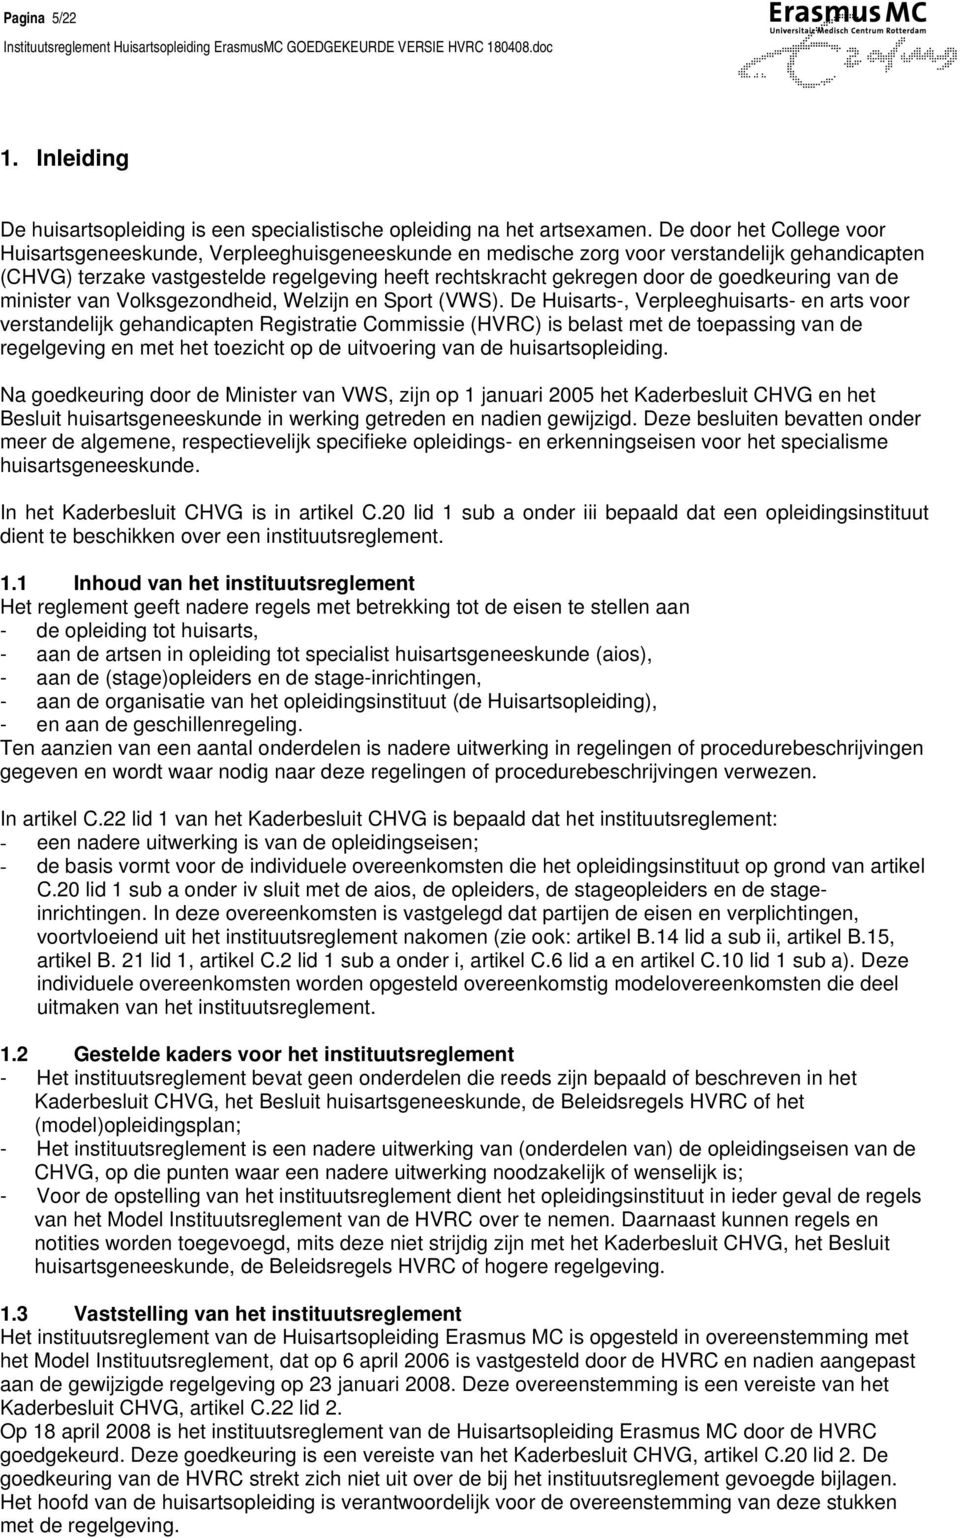 goedkeuring van de minister van Volksgezondheid, Welzijn en Sport (VWS).